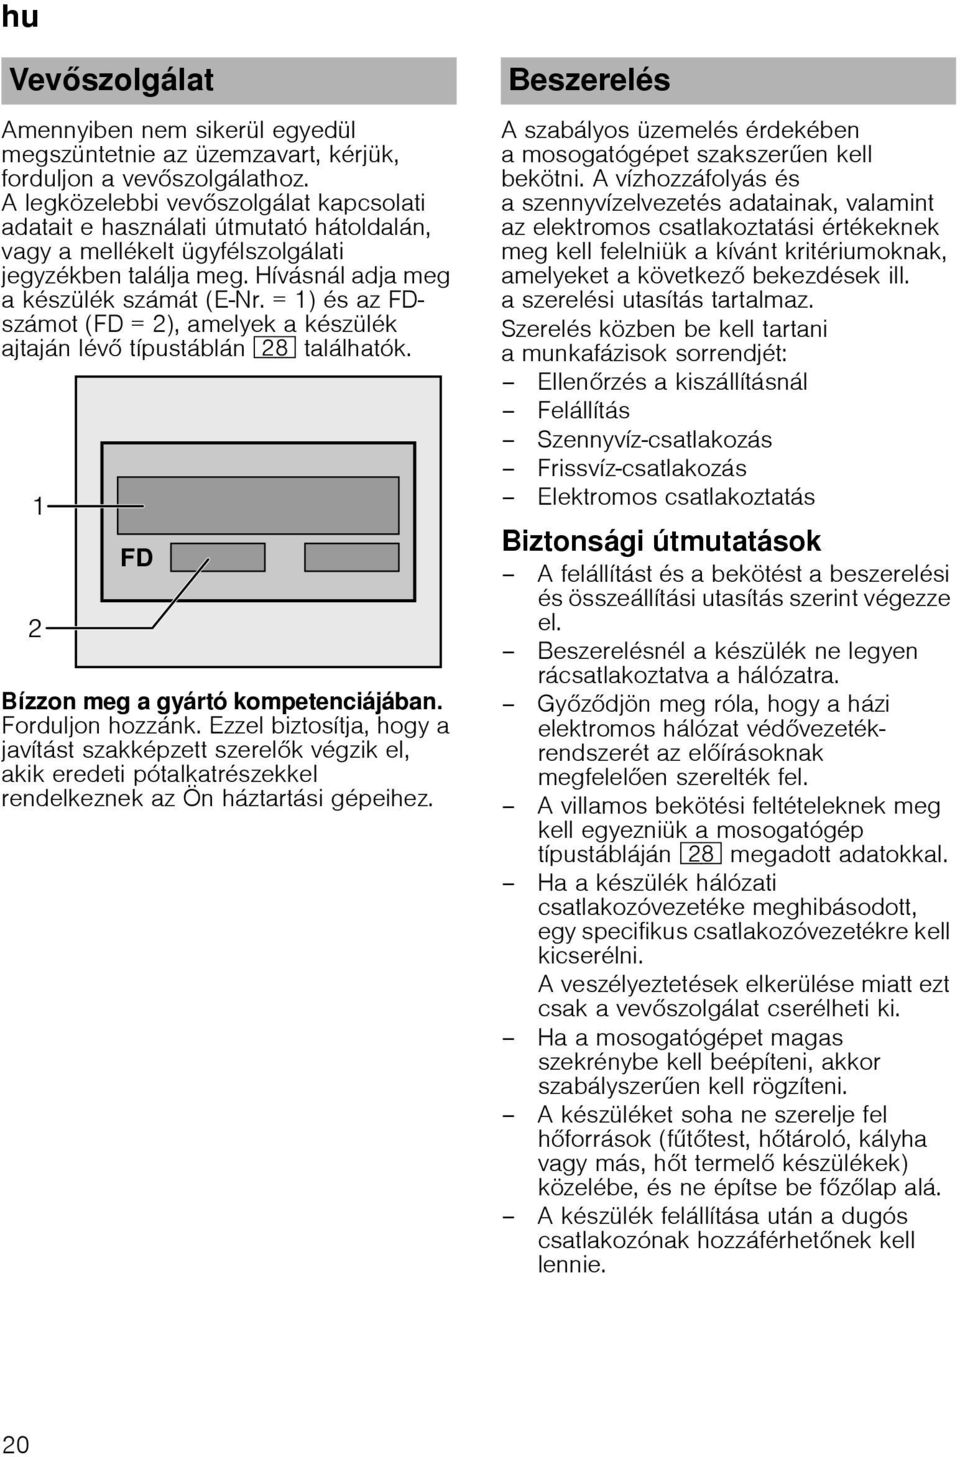 Mosogatógép (8908) Használati utasítás - PDF Ingyenes letöltés